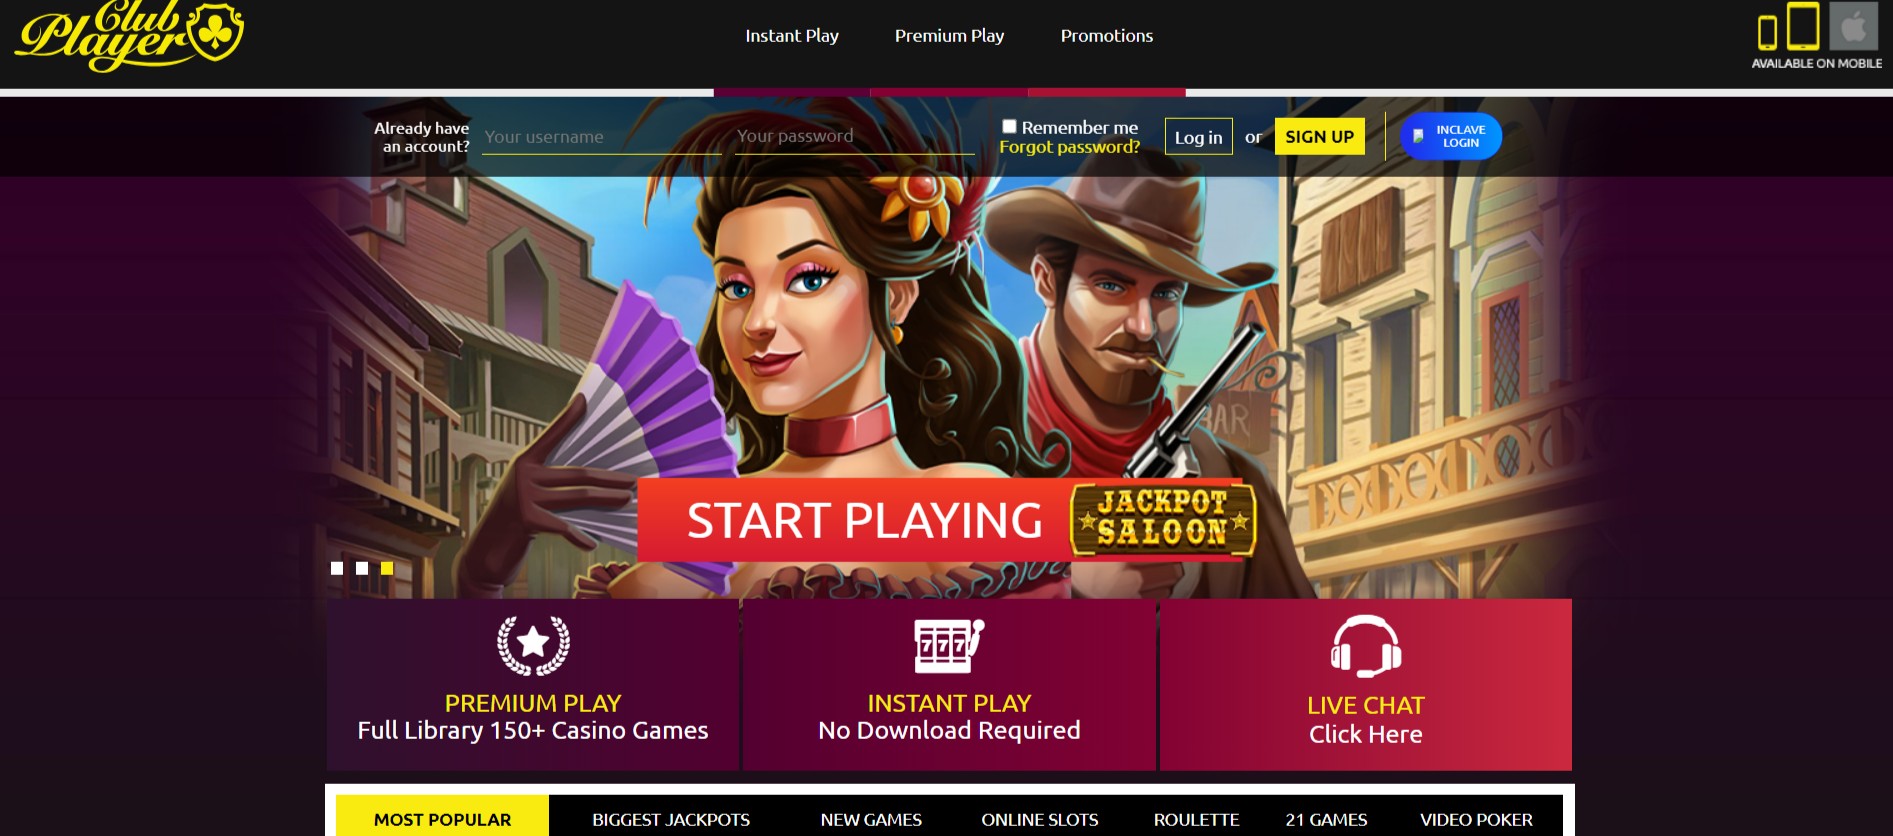 club player casino homepage screenshot